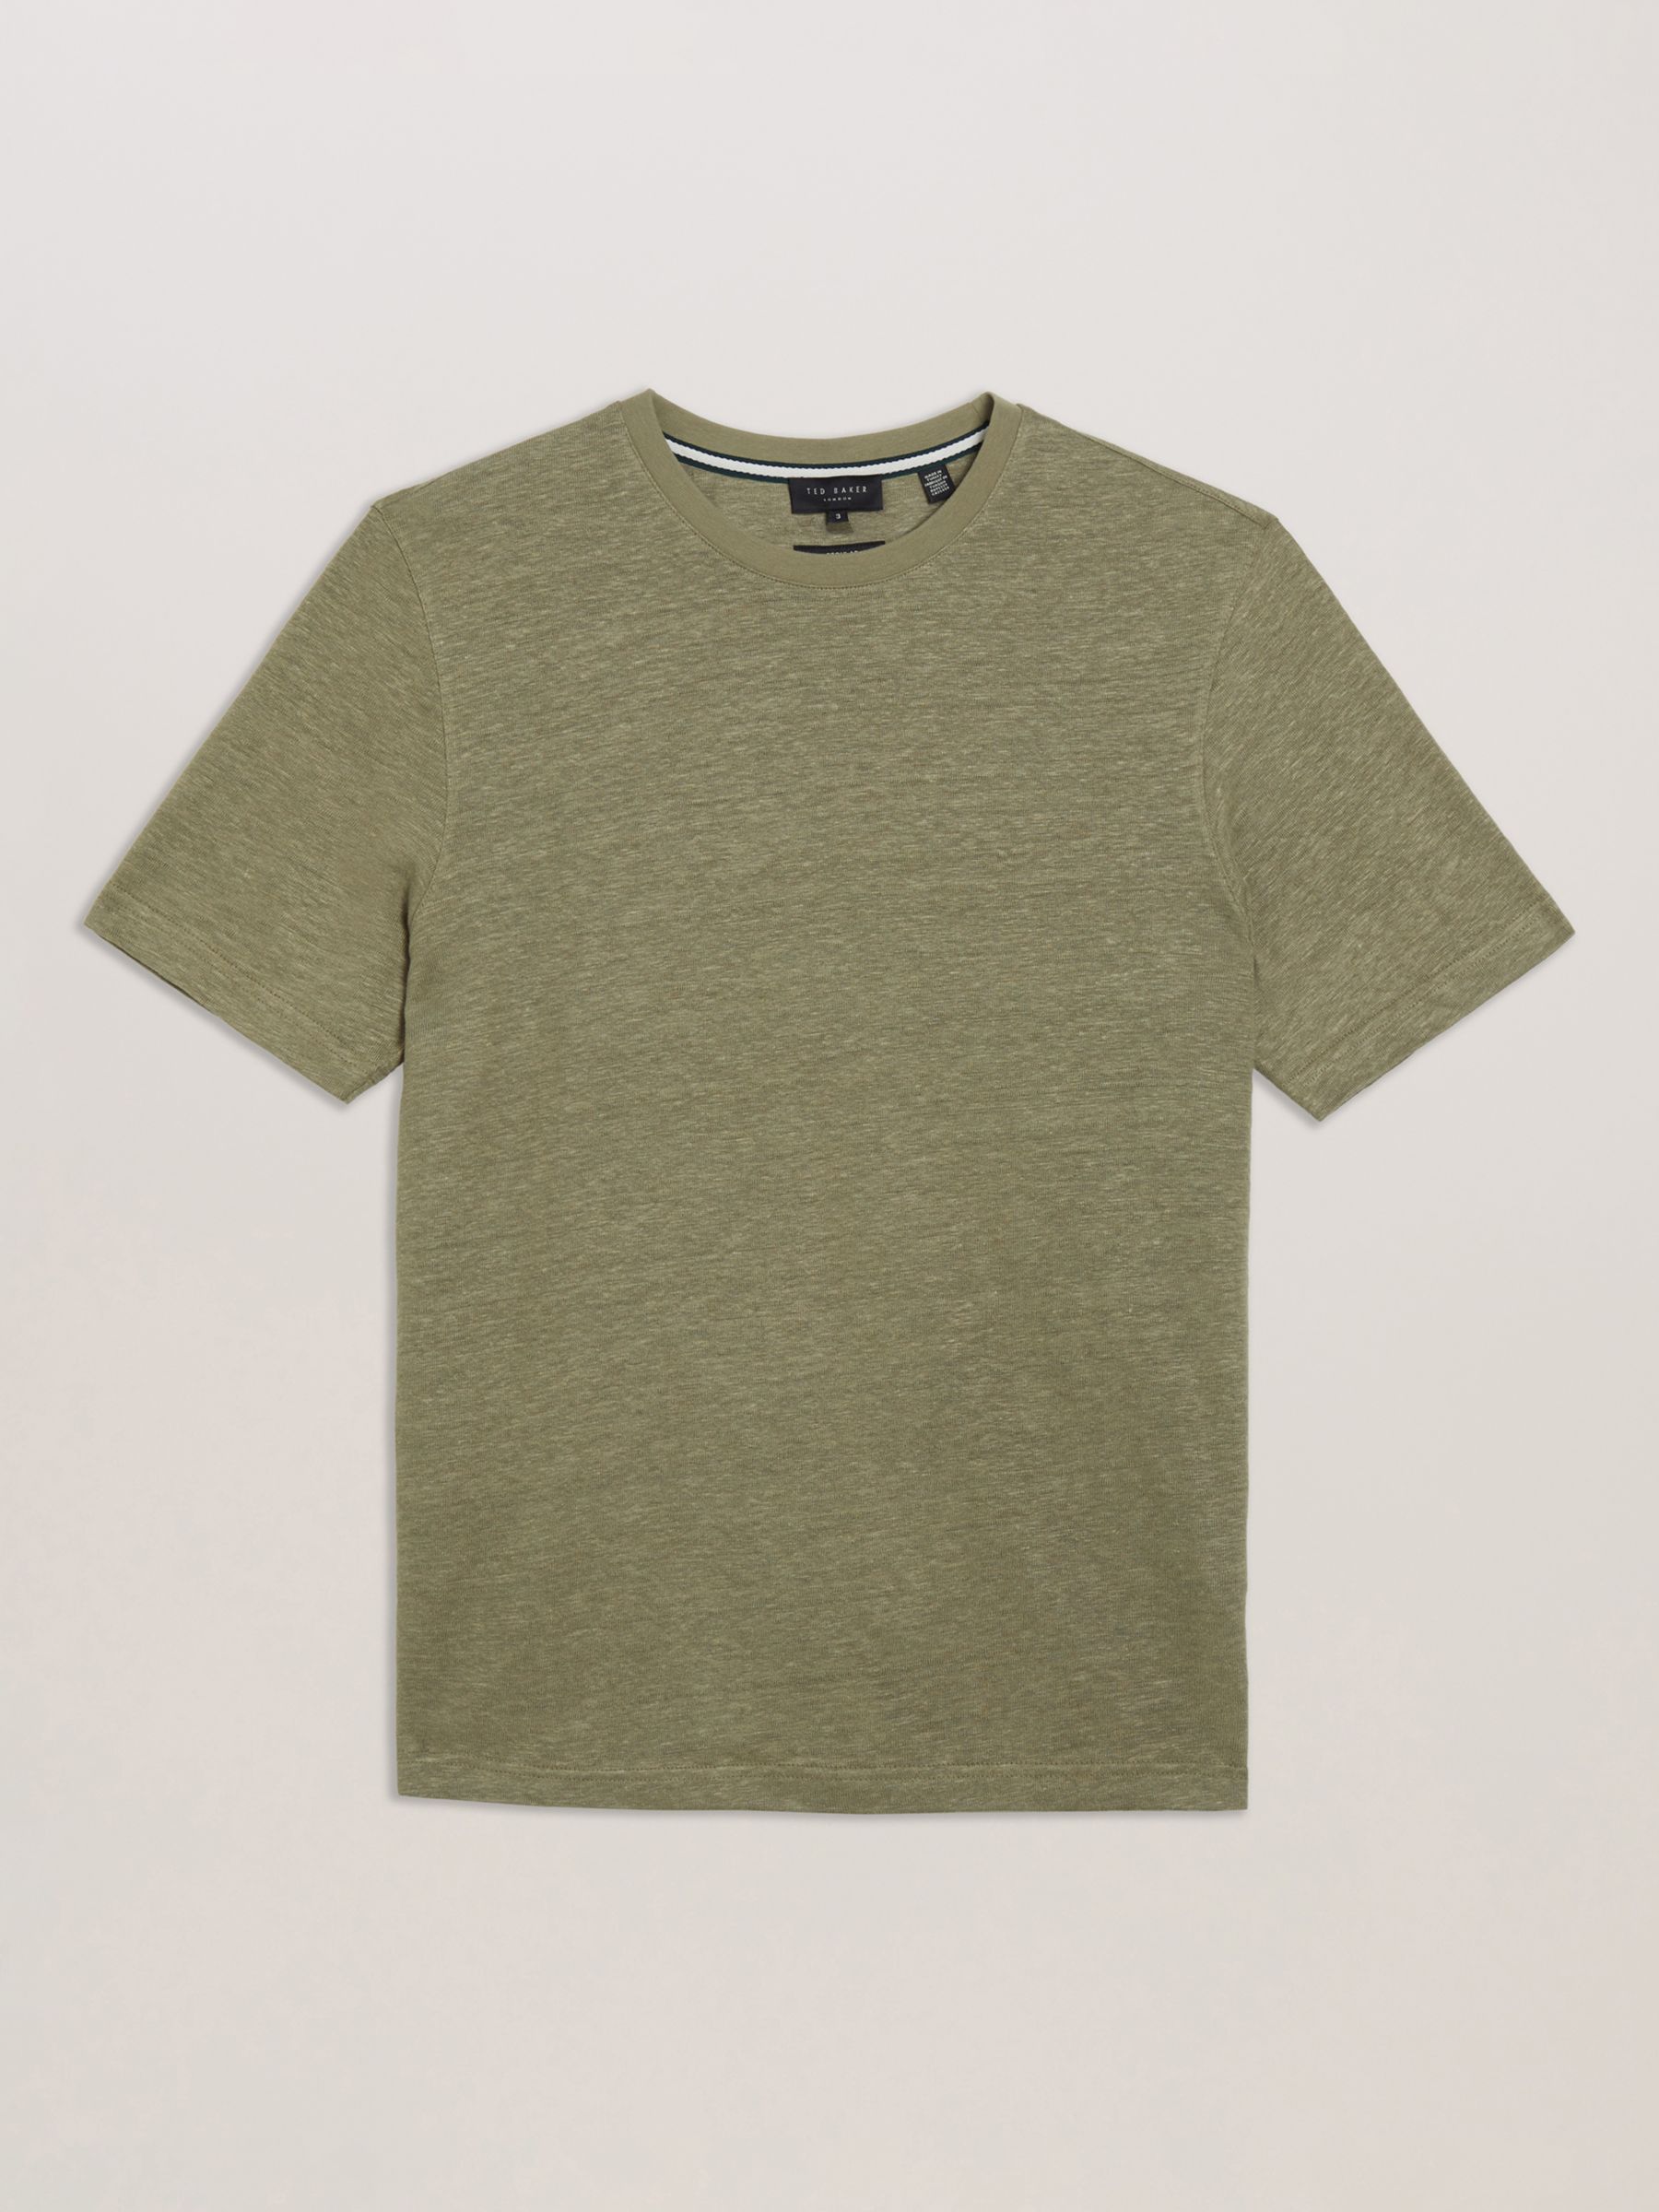 Ted Baker Flinlo Linen T-Shirt, Olive, Olive, S